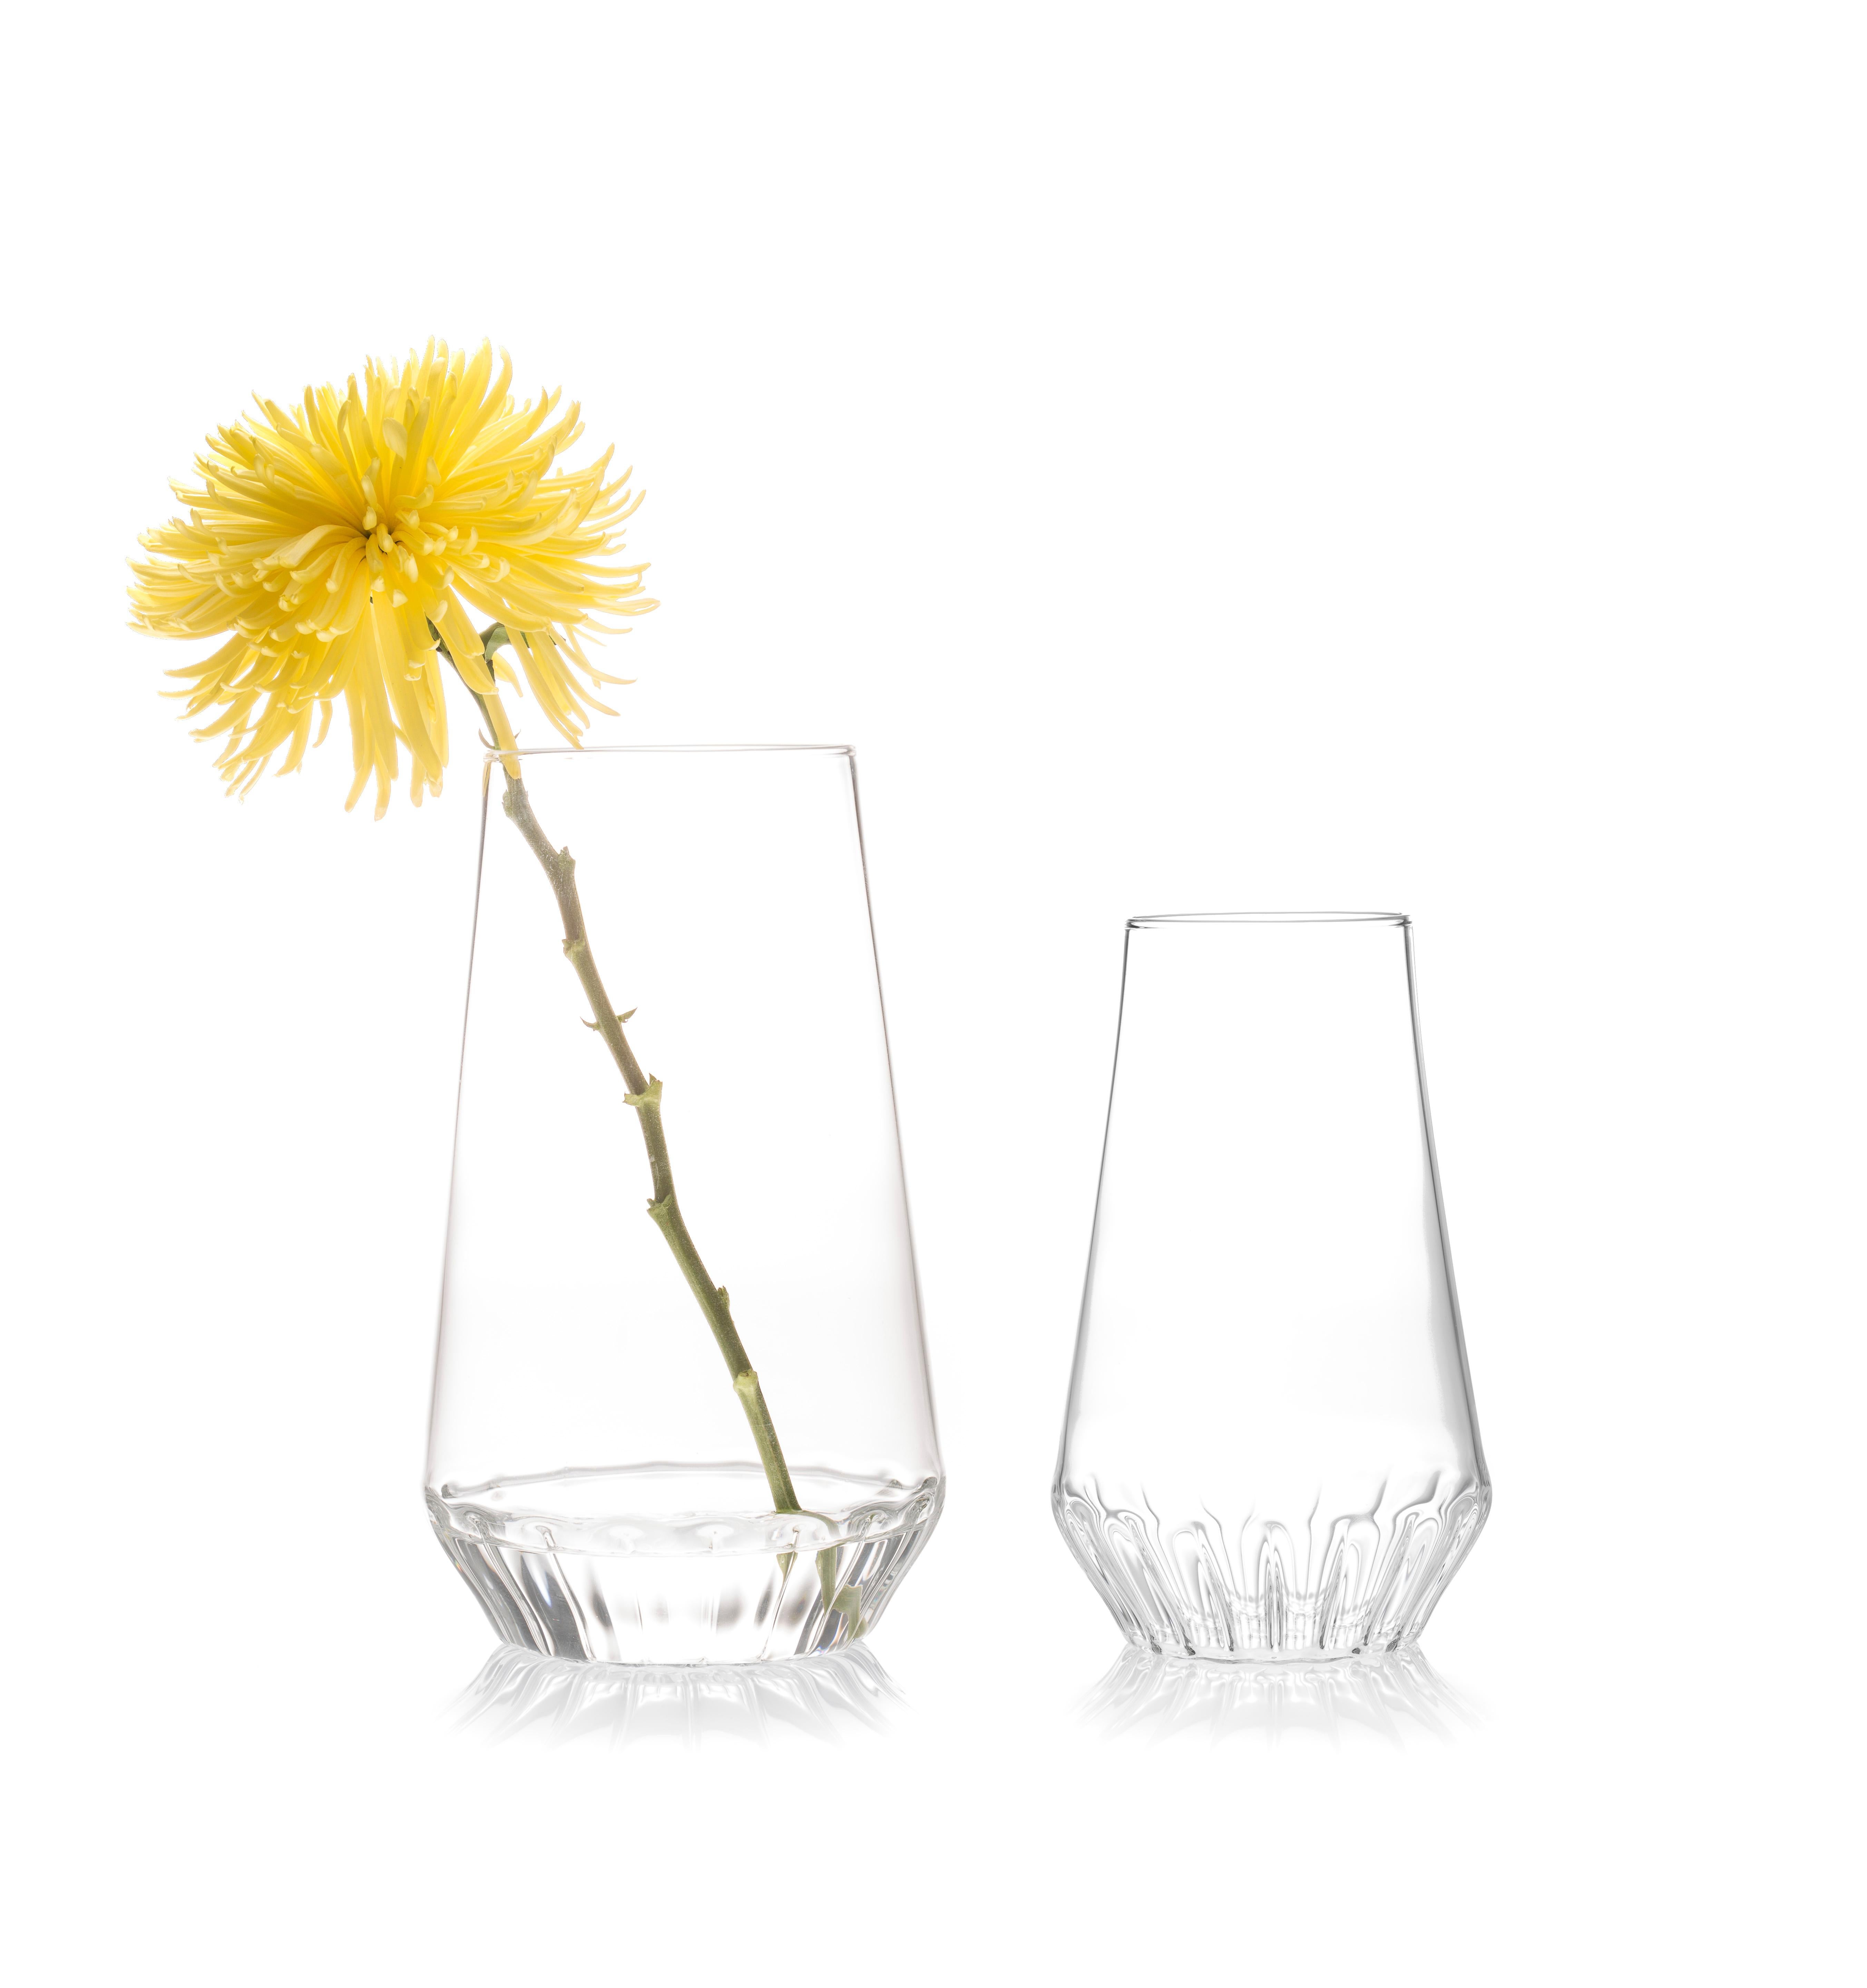 Vases Rossi Large & Medium - set of 2

Qu'il s'agisse d'une simple tige ou d'un bouquet, le verre transparent met en valeur la tige de la fleur, la célébrant comme partie intégrante de la composition. L'effet lenticulaire du verre cannelé au niveau